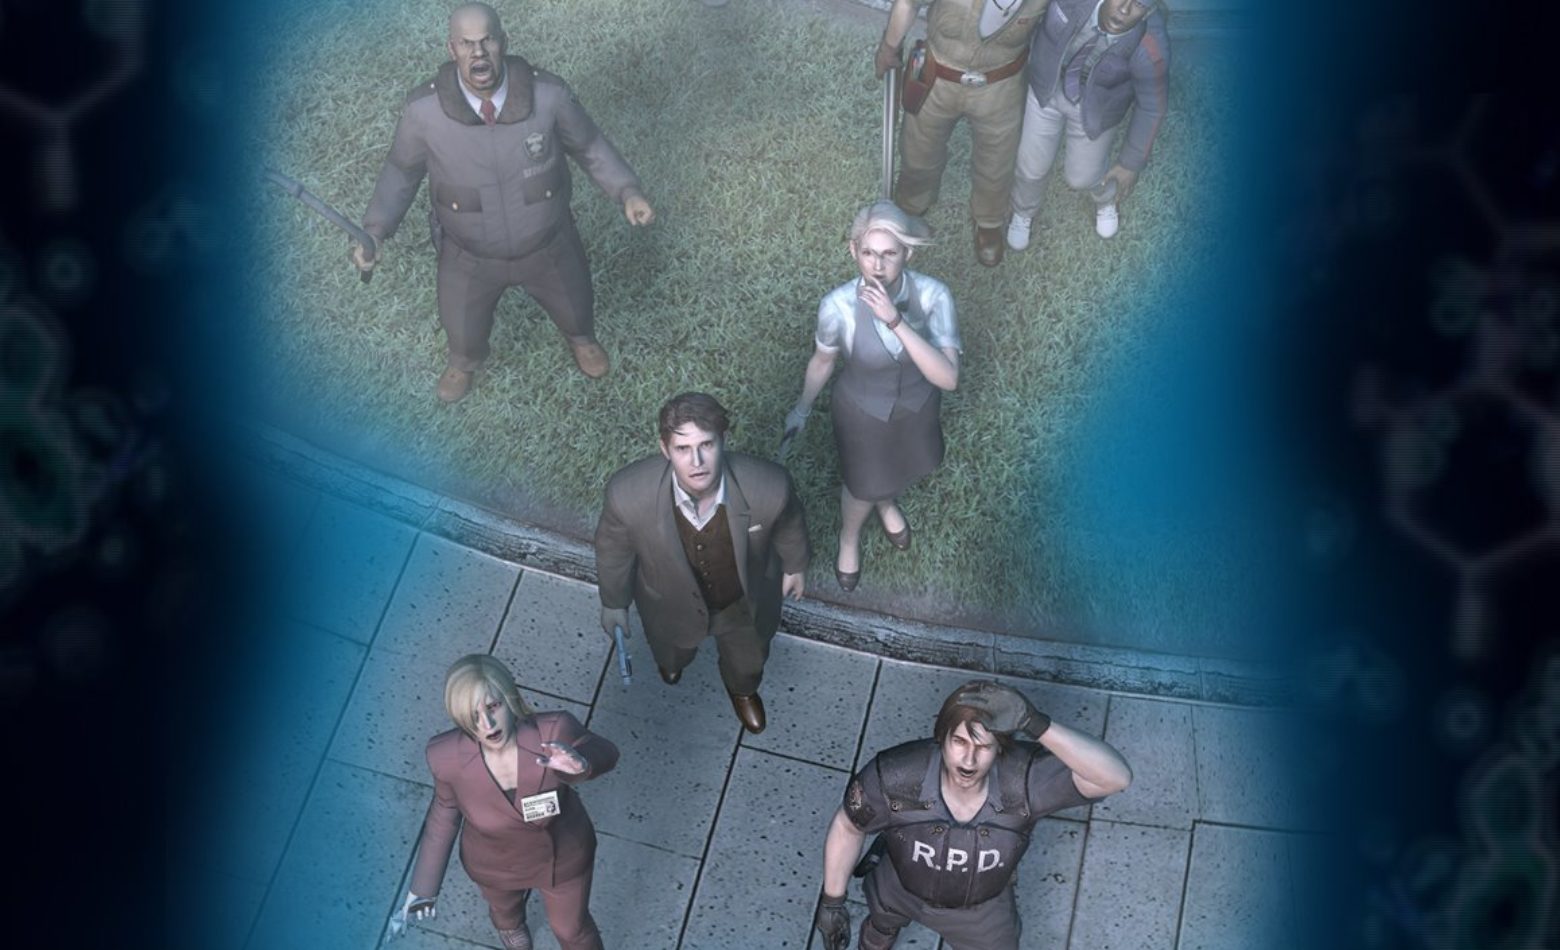 O início do caos na delegacia em Resident Evil: Outbreak File 2 [Gameplay]